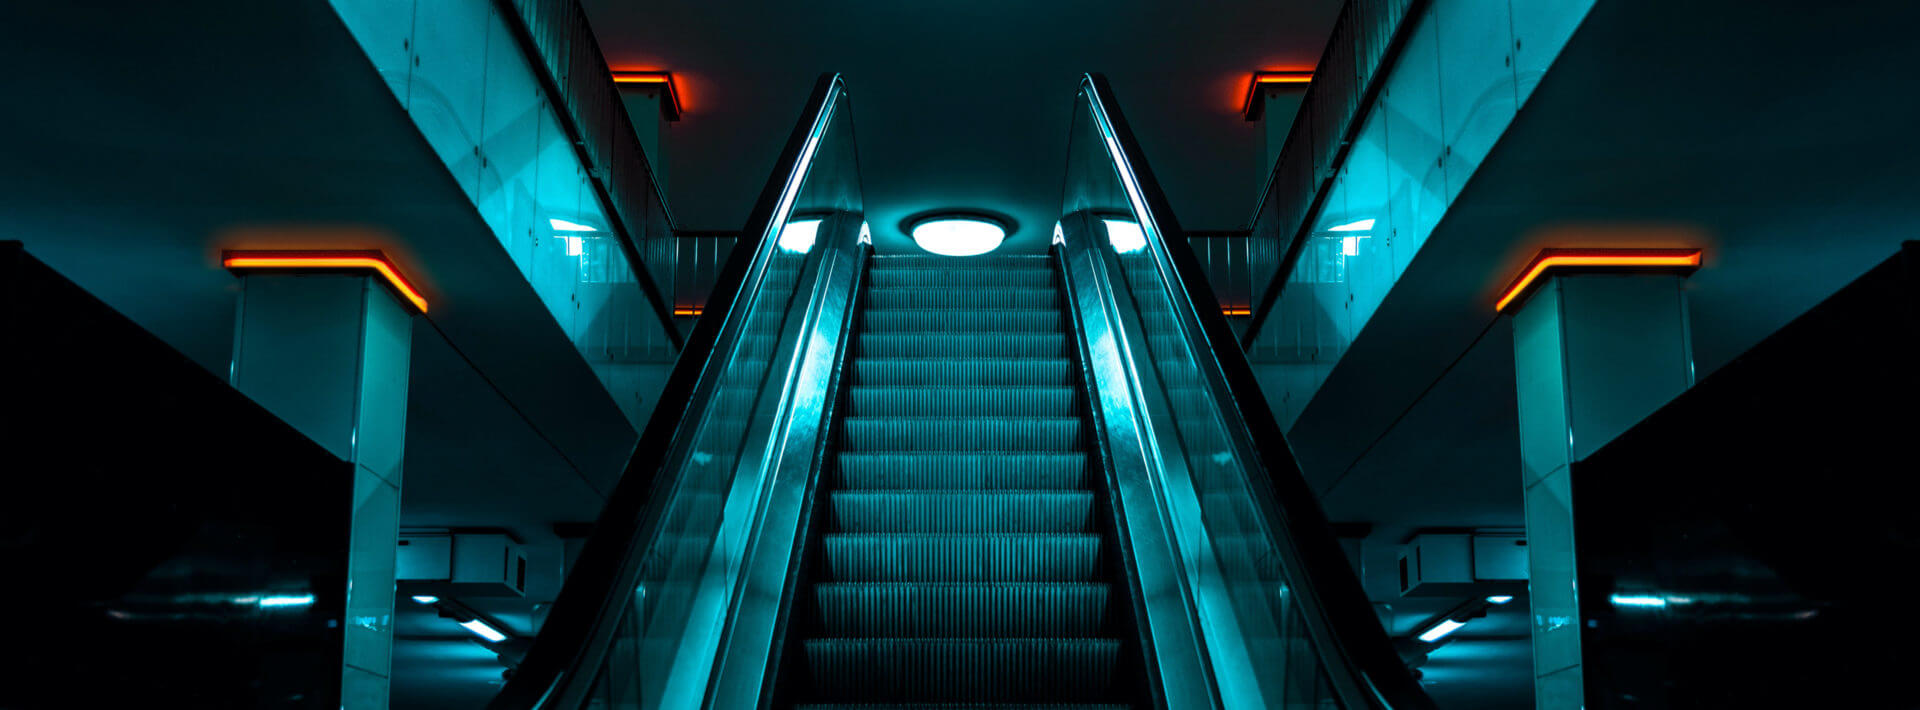 Aufsteigende Rolltreppe als Sinnbild für Venture Building